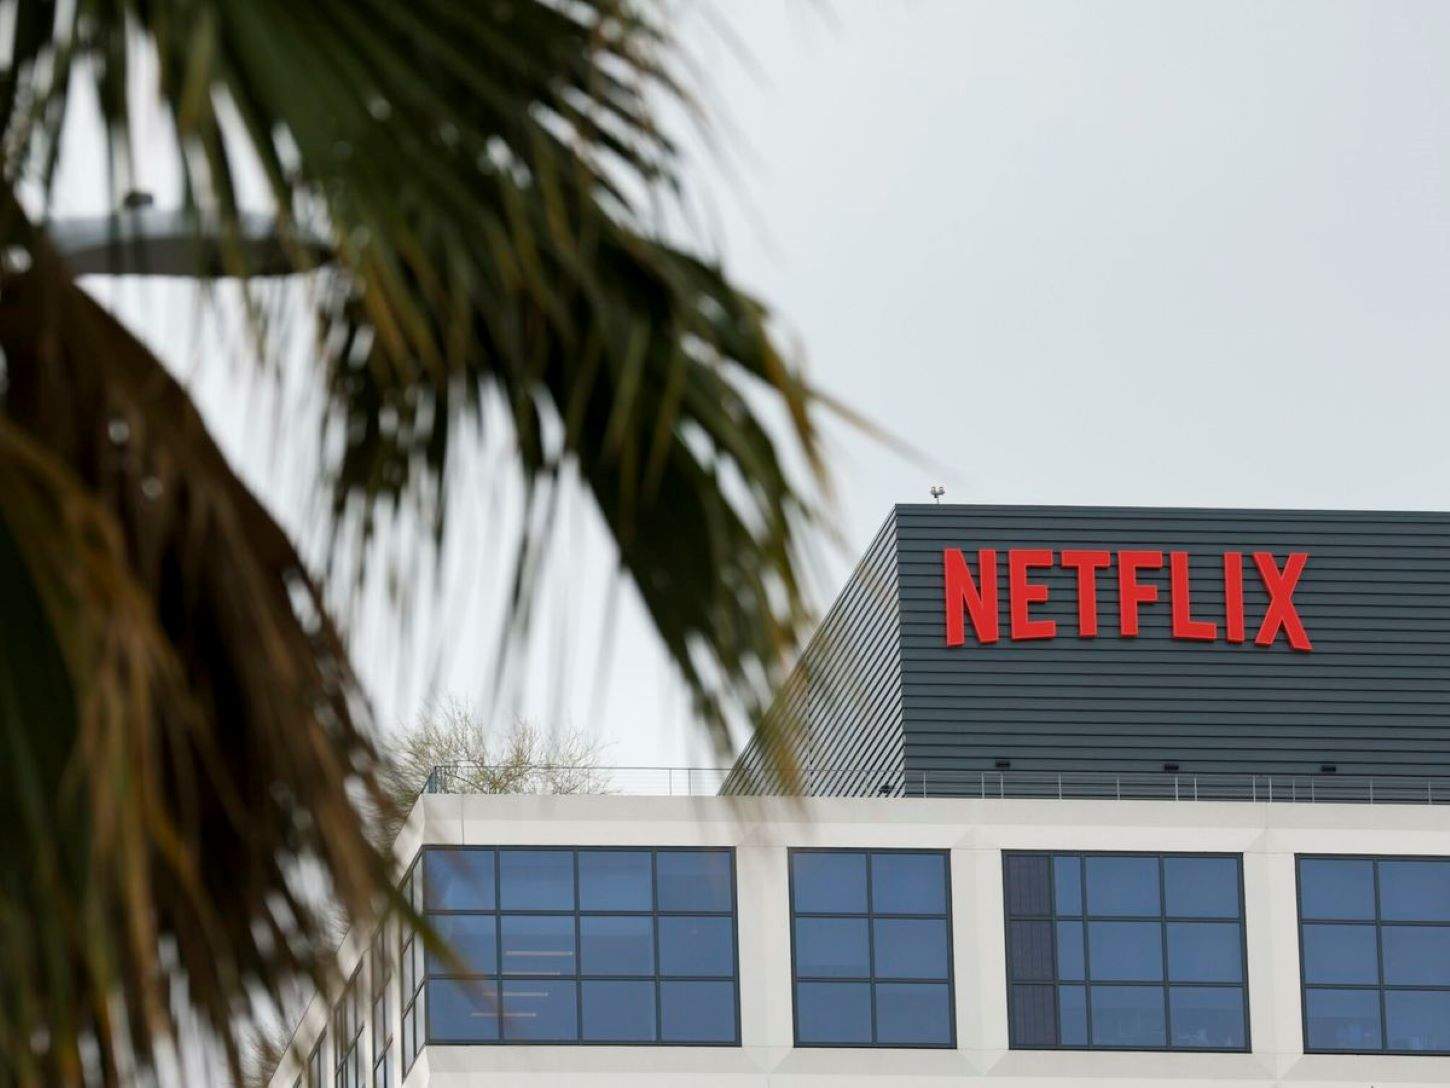 Netflix registra un beneficio neto de 1.970 millones de euros en el segundo trimestre, un 44,2% más